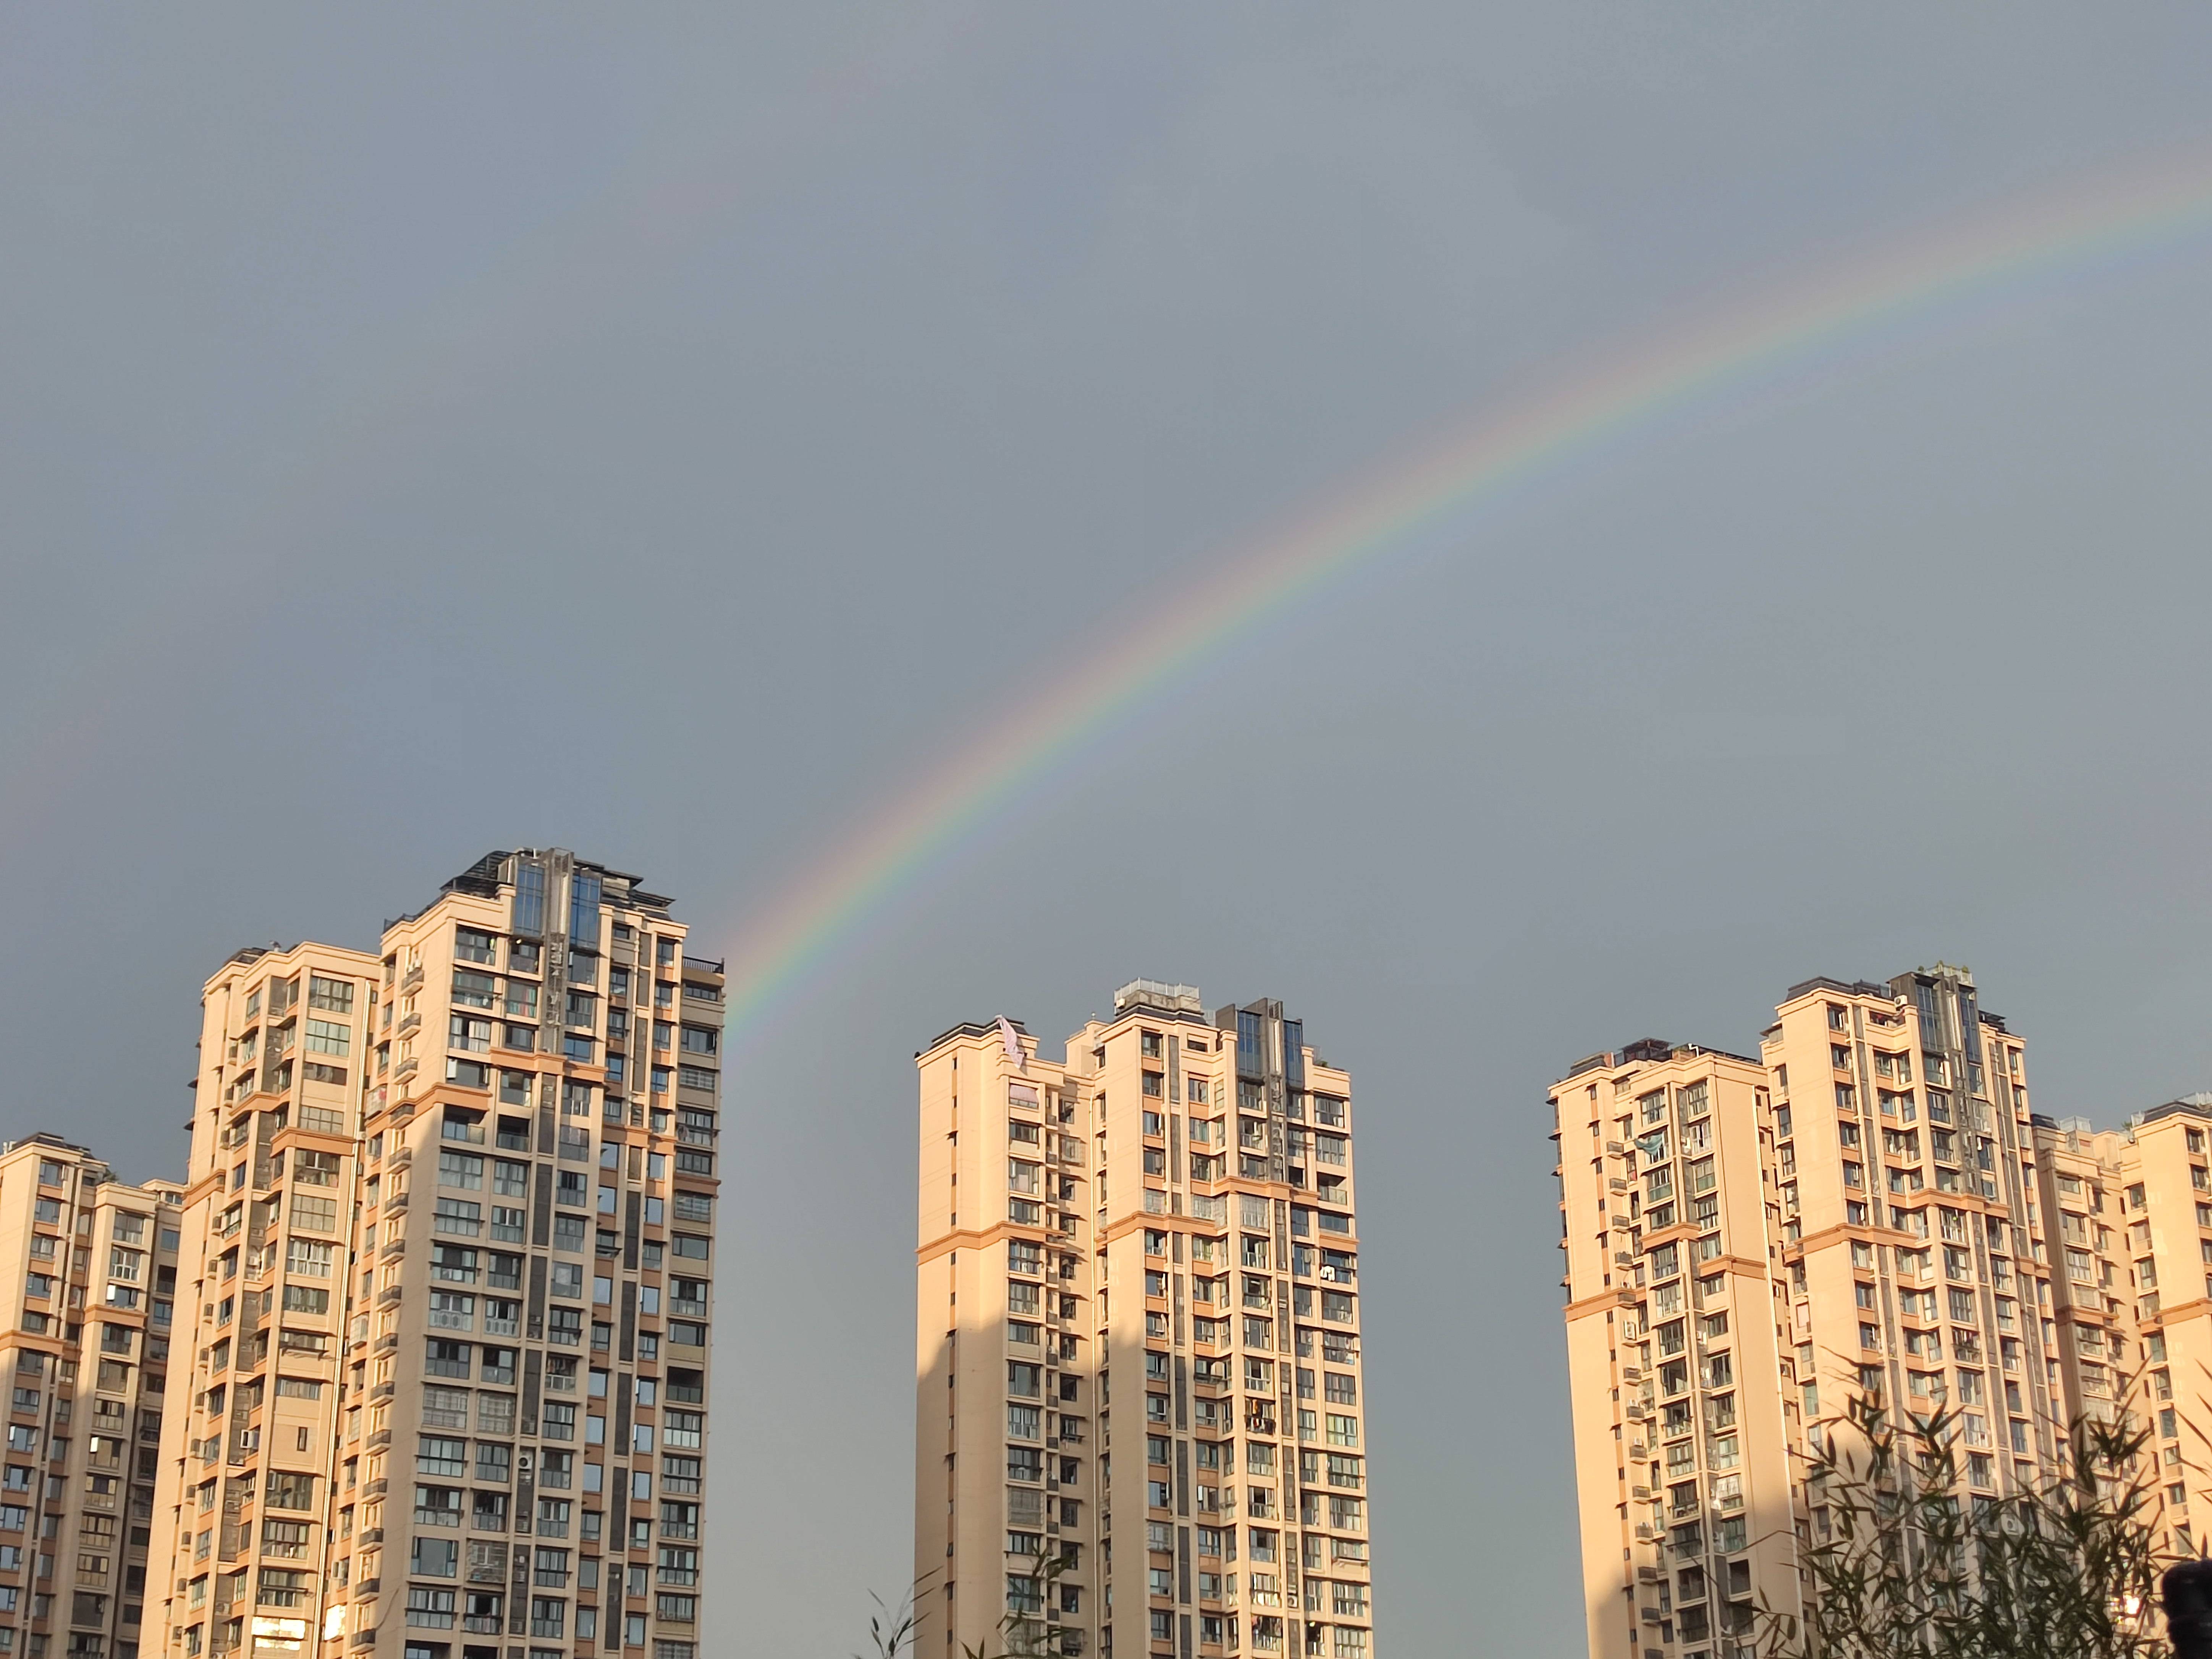 太美了!大雨过后,四川自贡惊现巨大彩虹